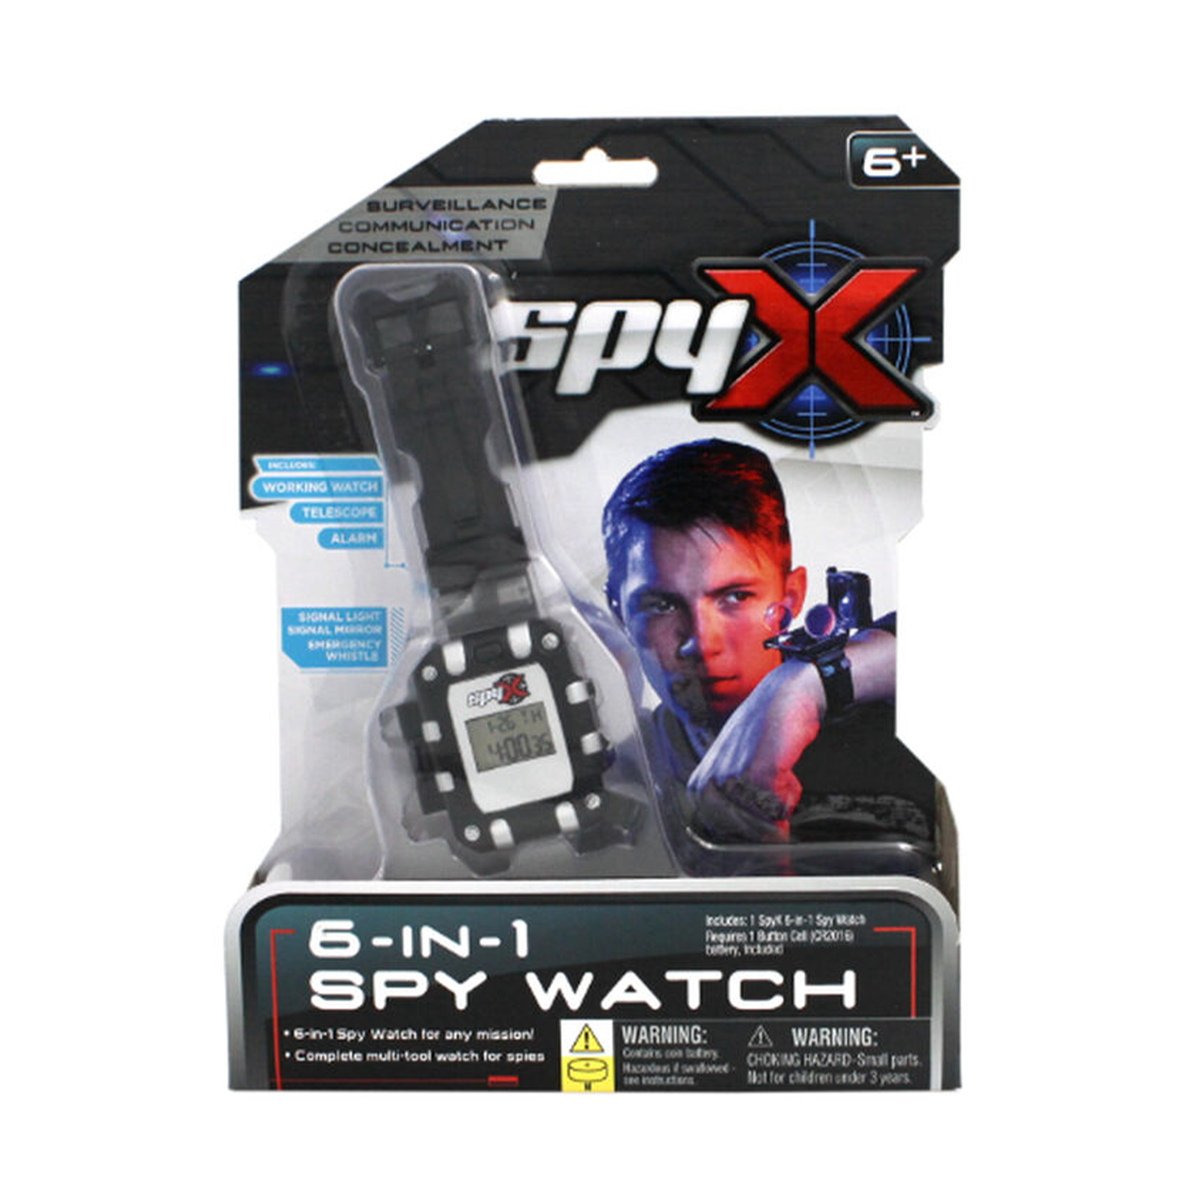 Spyx 6-IN-1 Spy Watch 10501